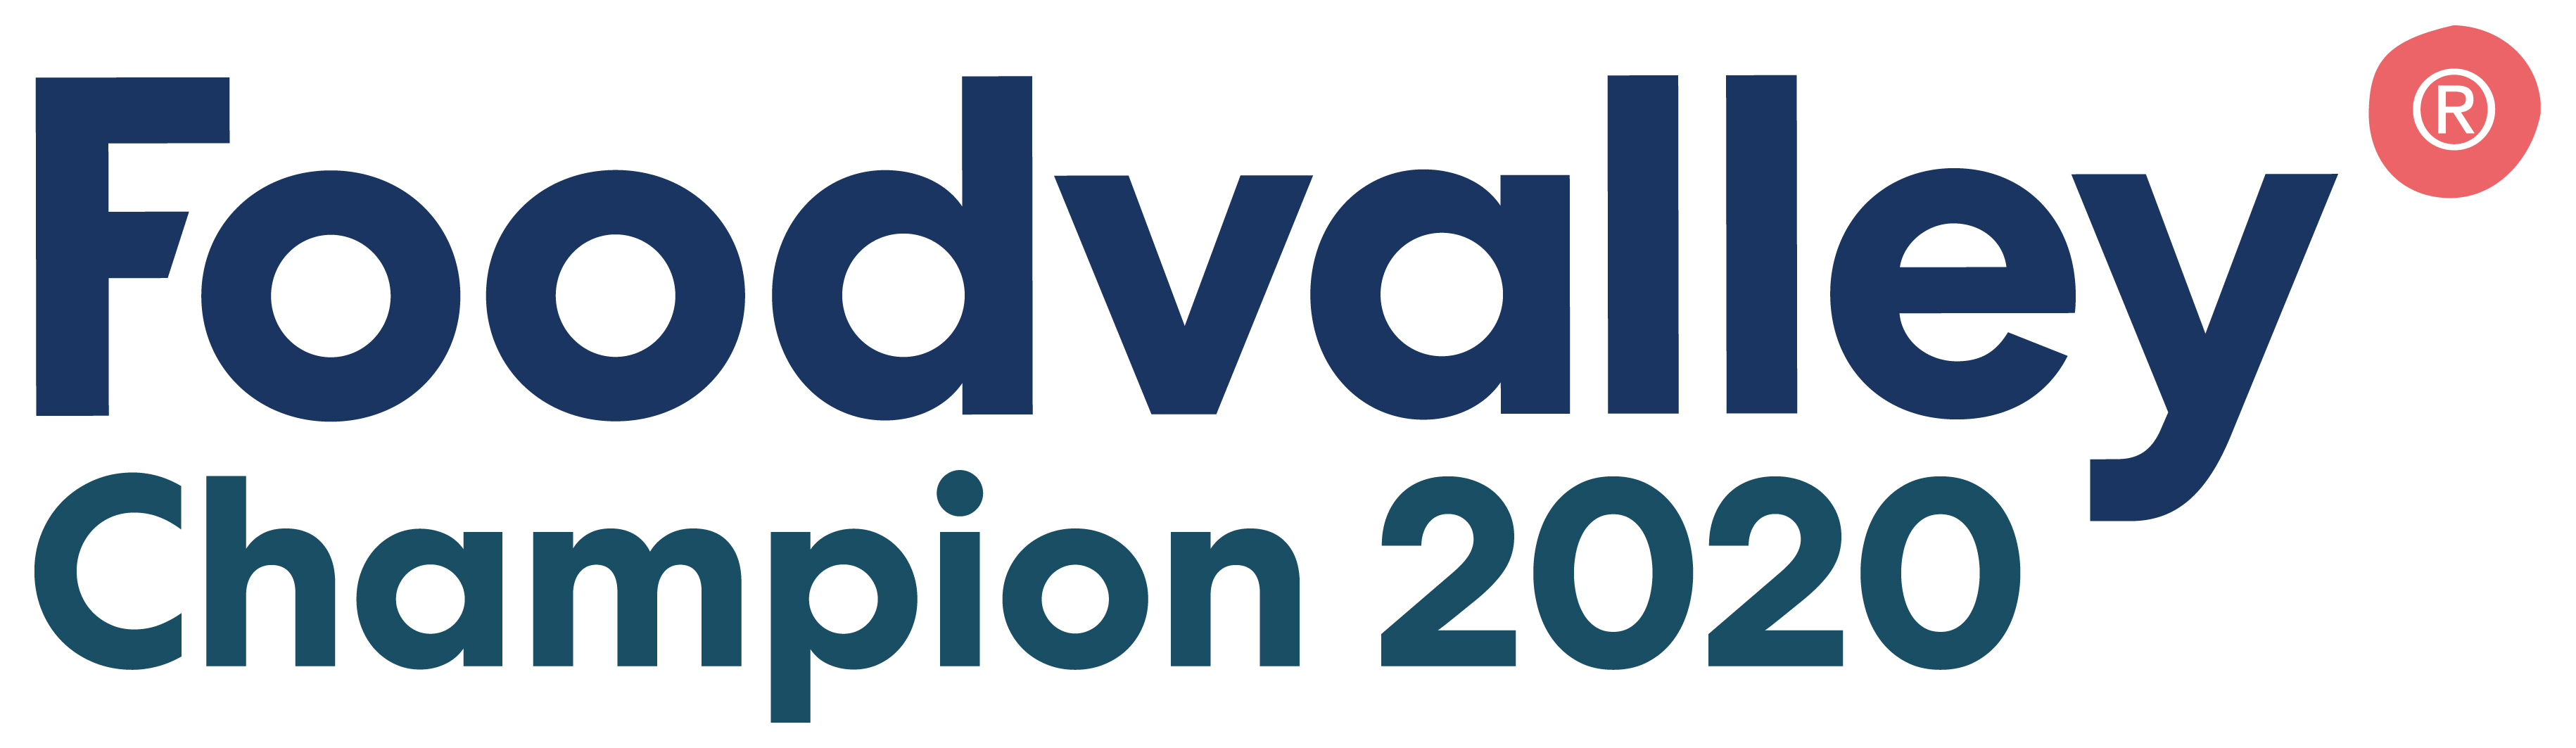 Foodvalley Champions 2020 Negen innovatieve agrifoodbedrijven genomineerd